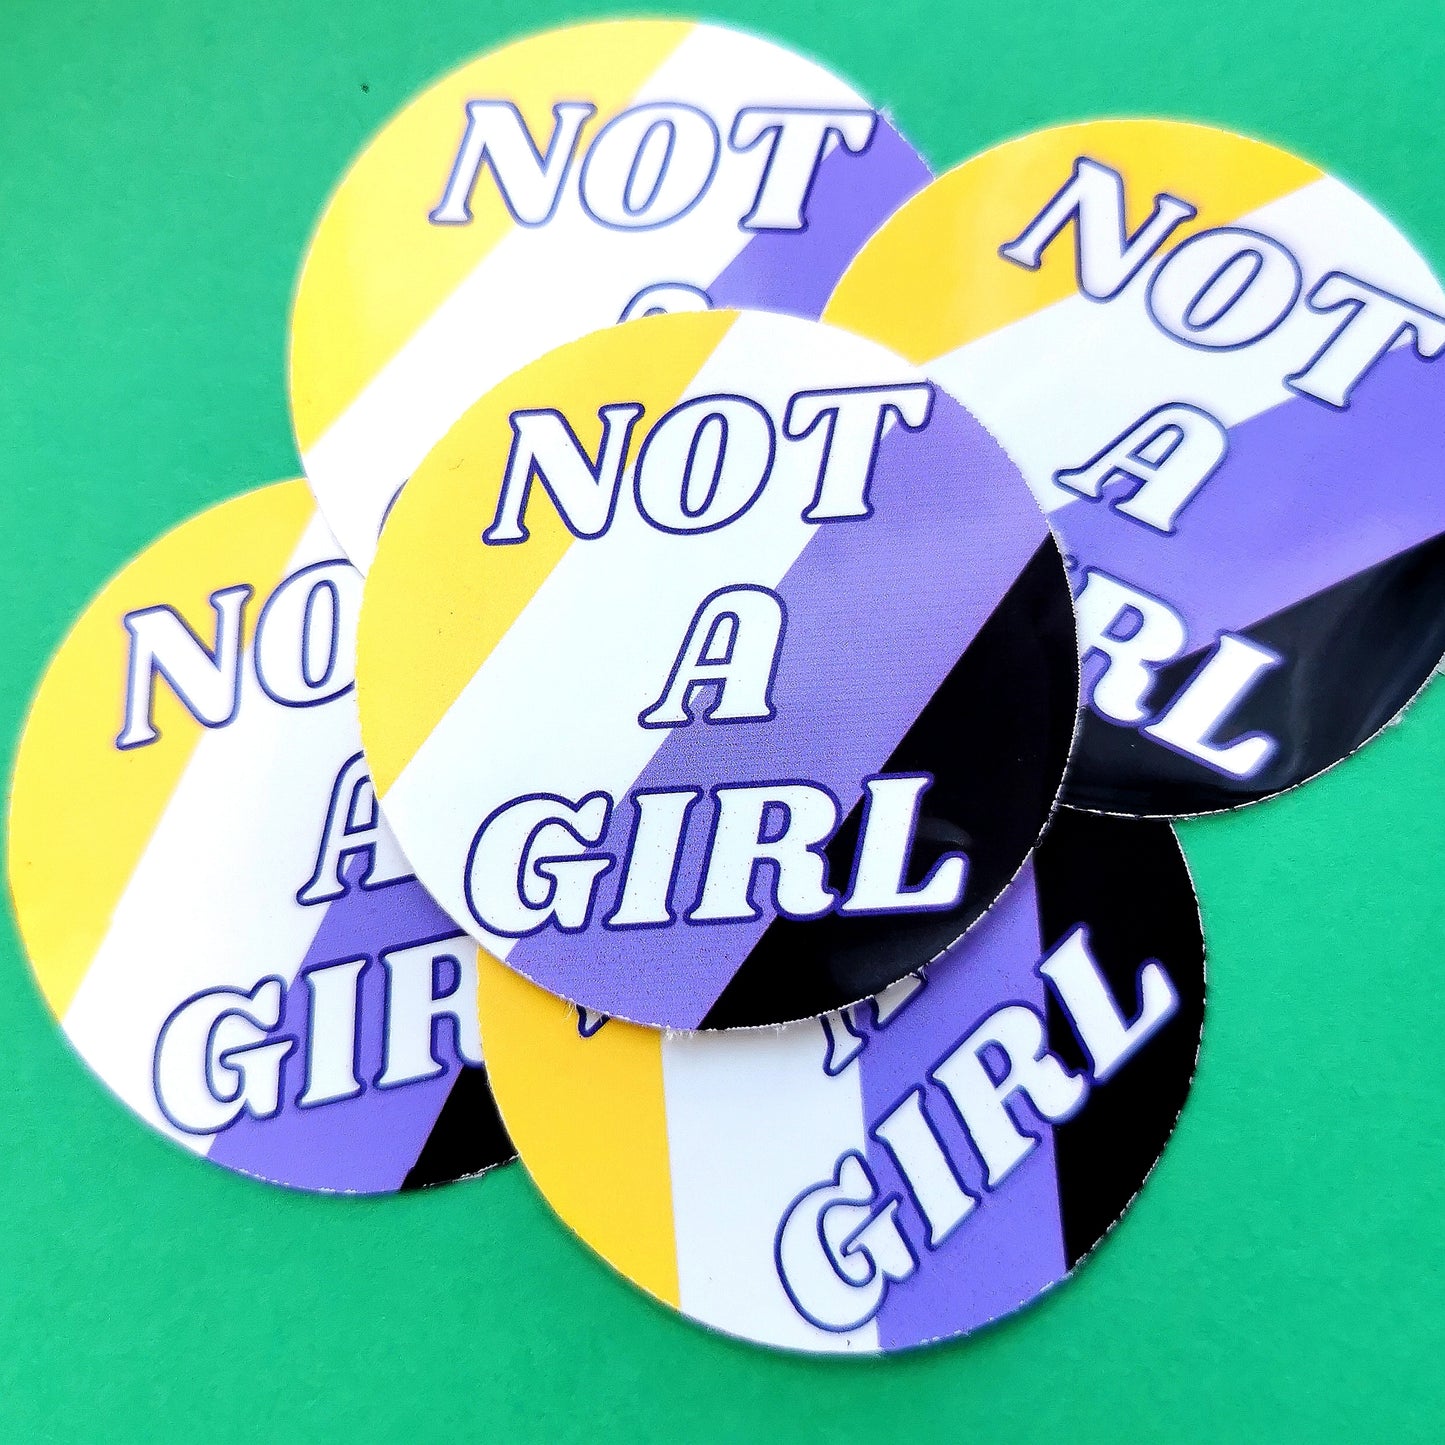 Not A Girl / Not A Boy Sticker